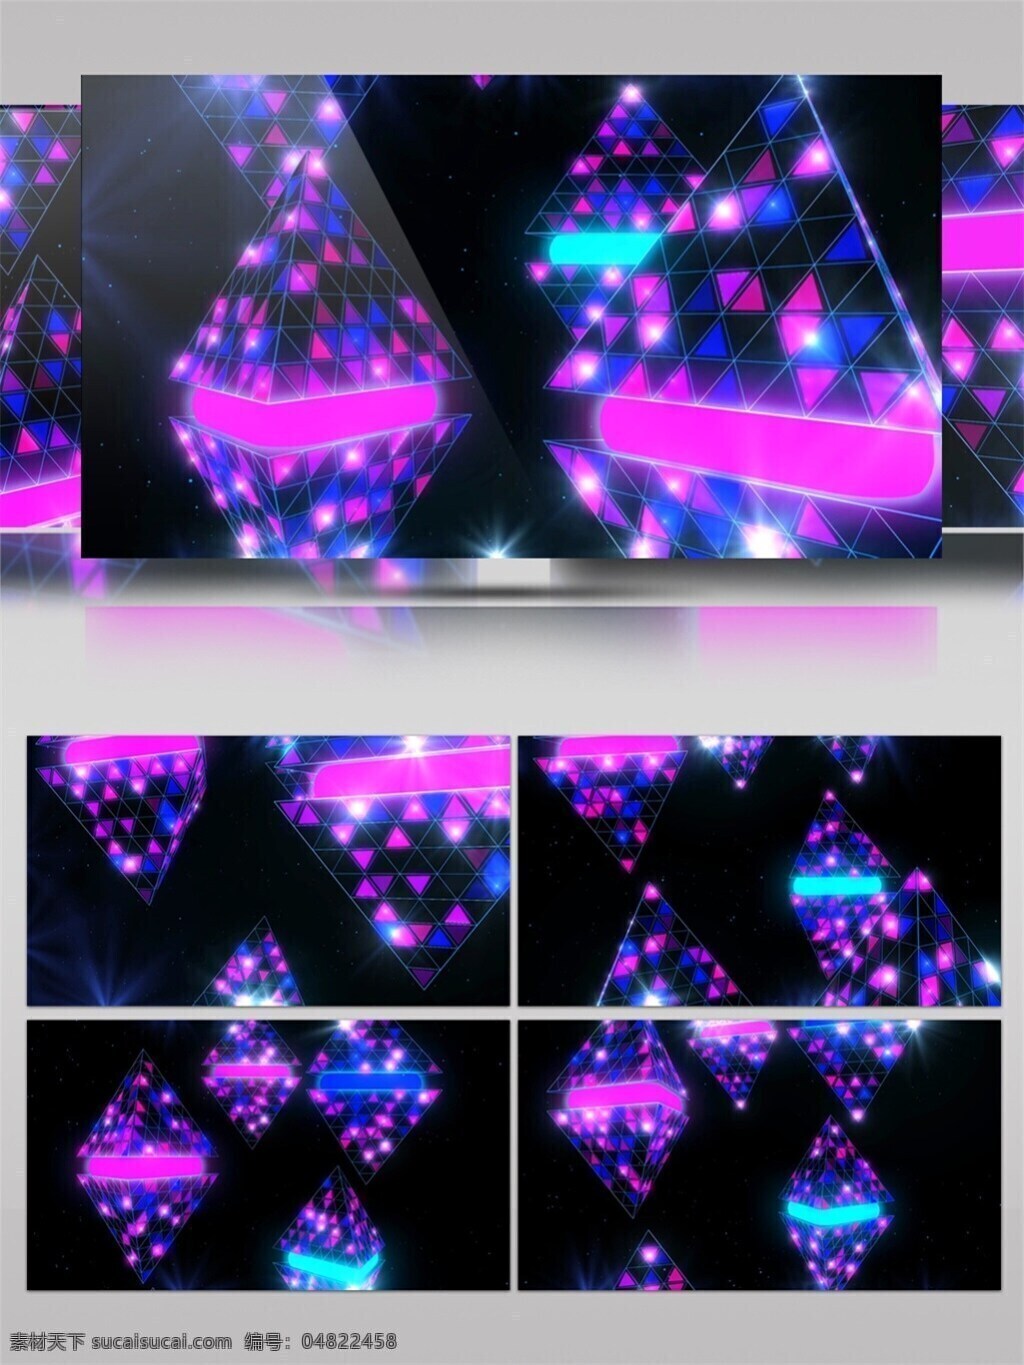 紫色 水平 高清 视频 壁纸图案 动态展示 房间装饰 酒吧灯光 特效 背景 装饰风格